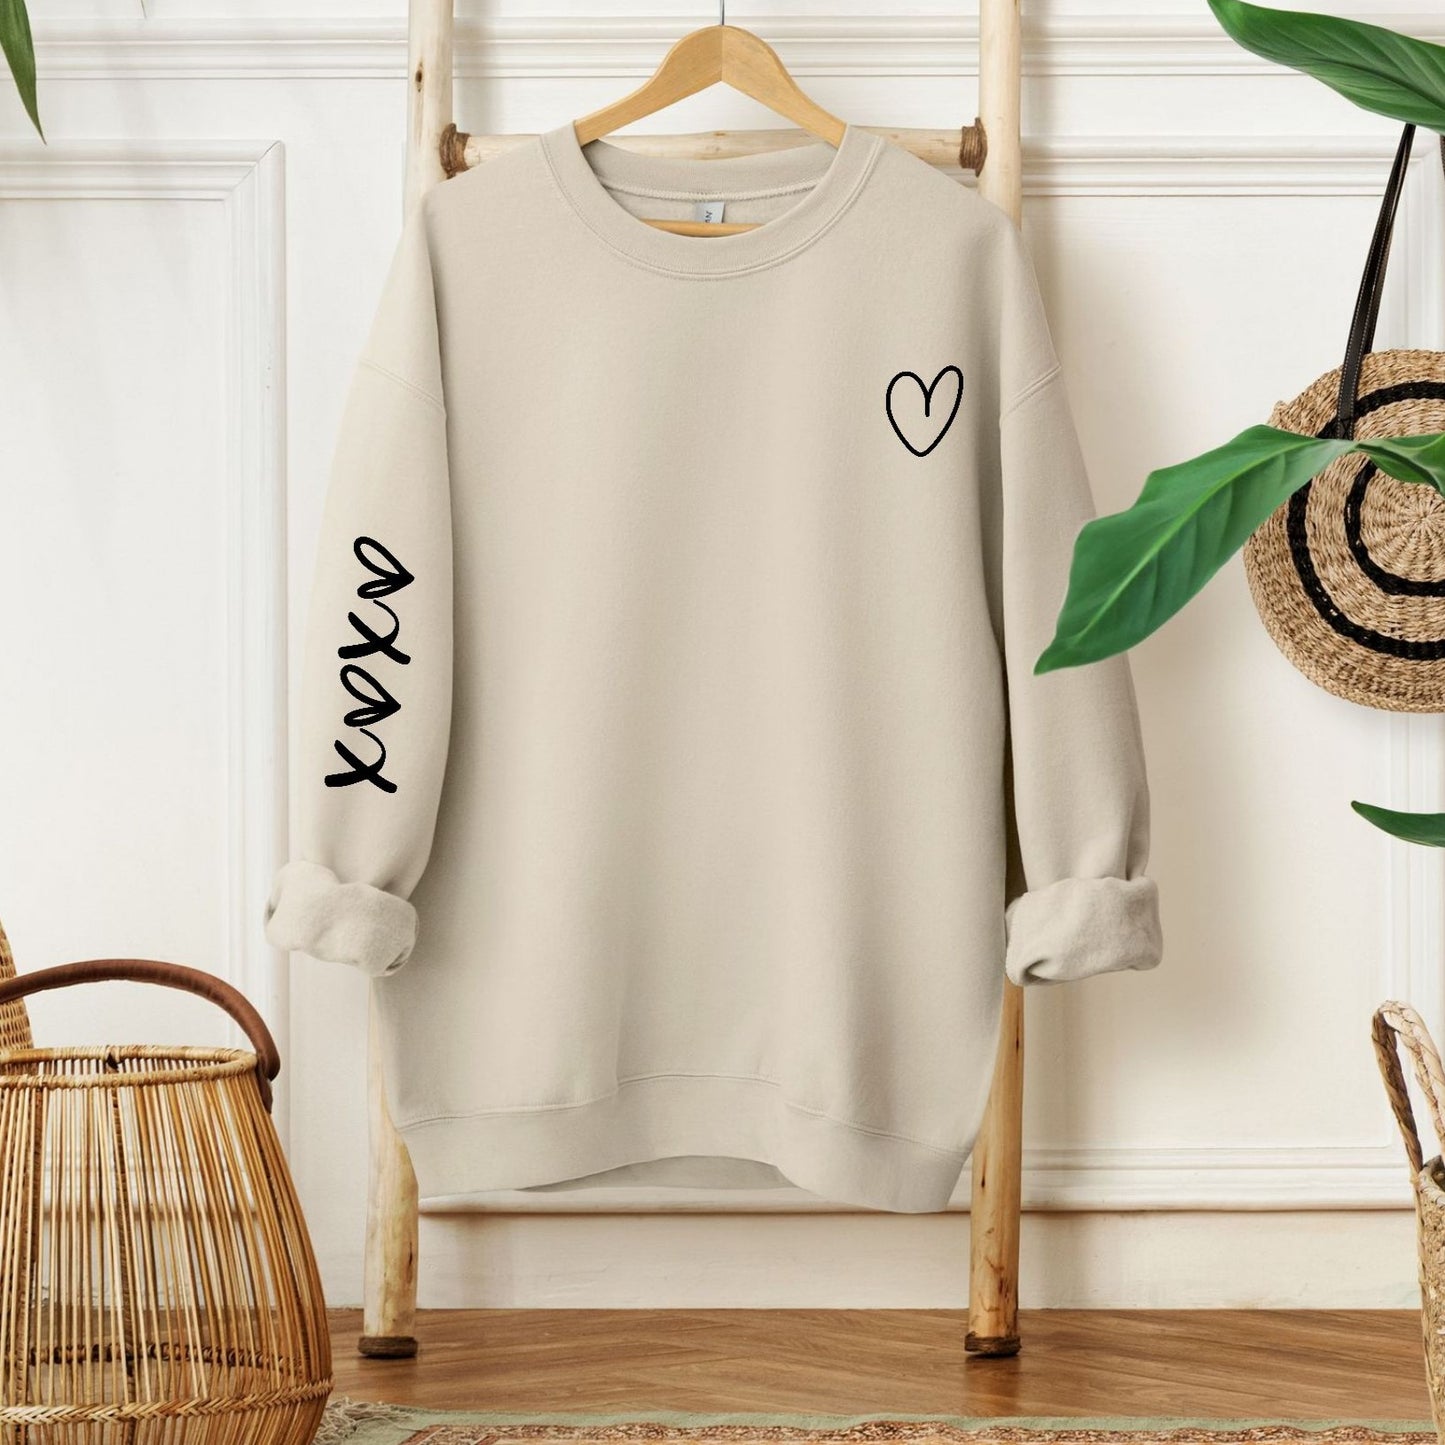 XOXO Sweatshirt